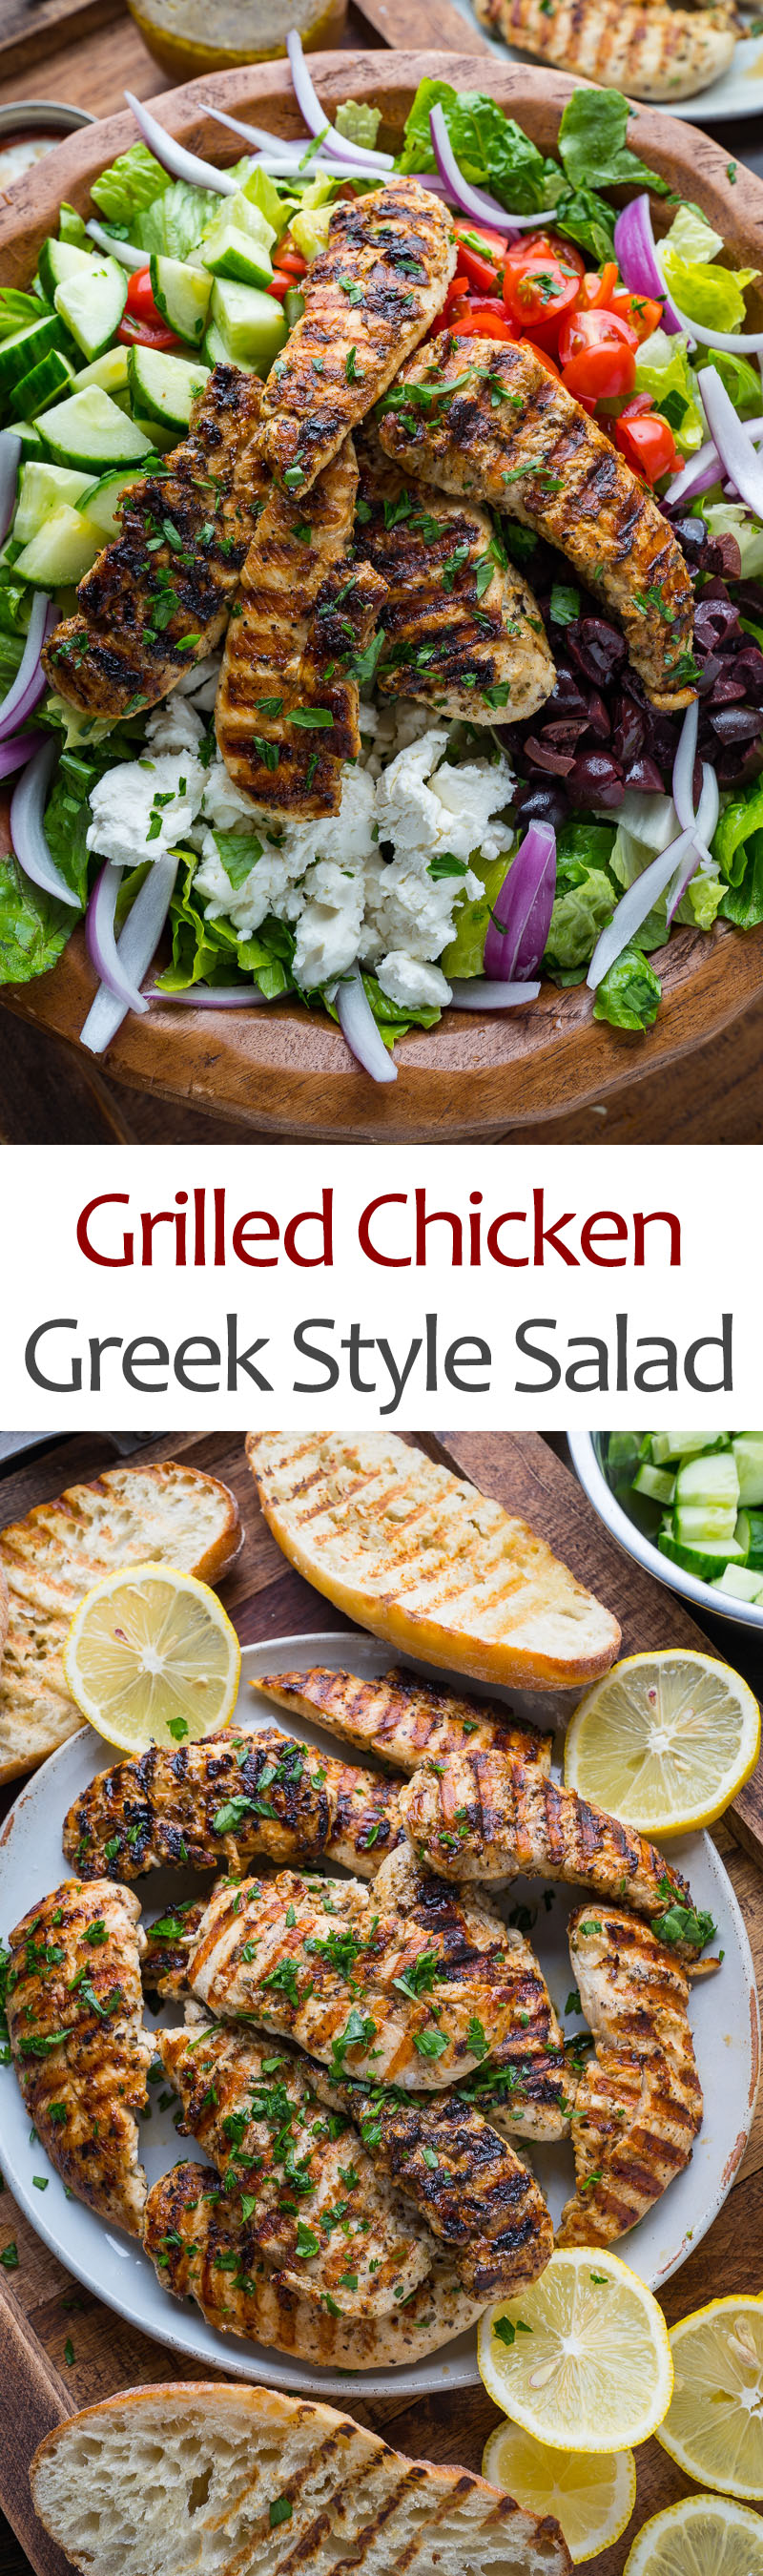 Greek Style Grilled Chicken Salad